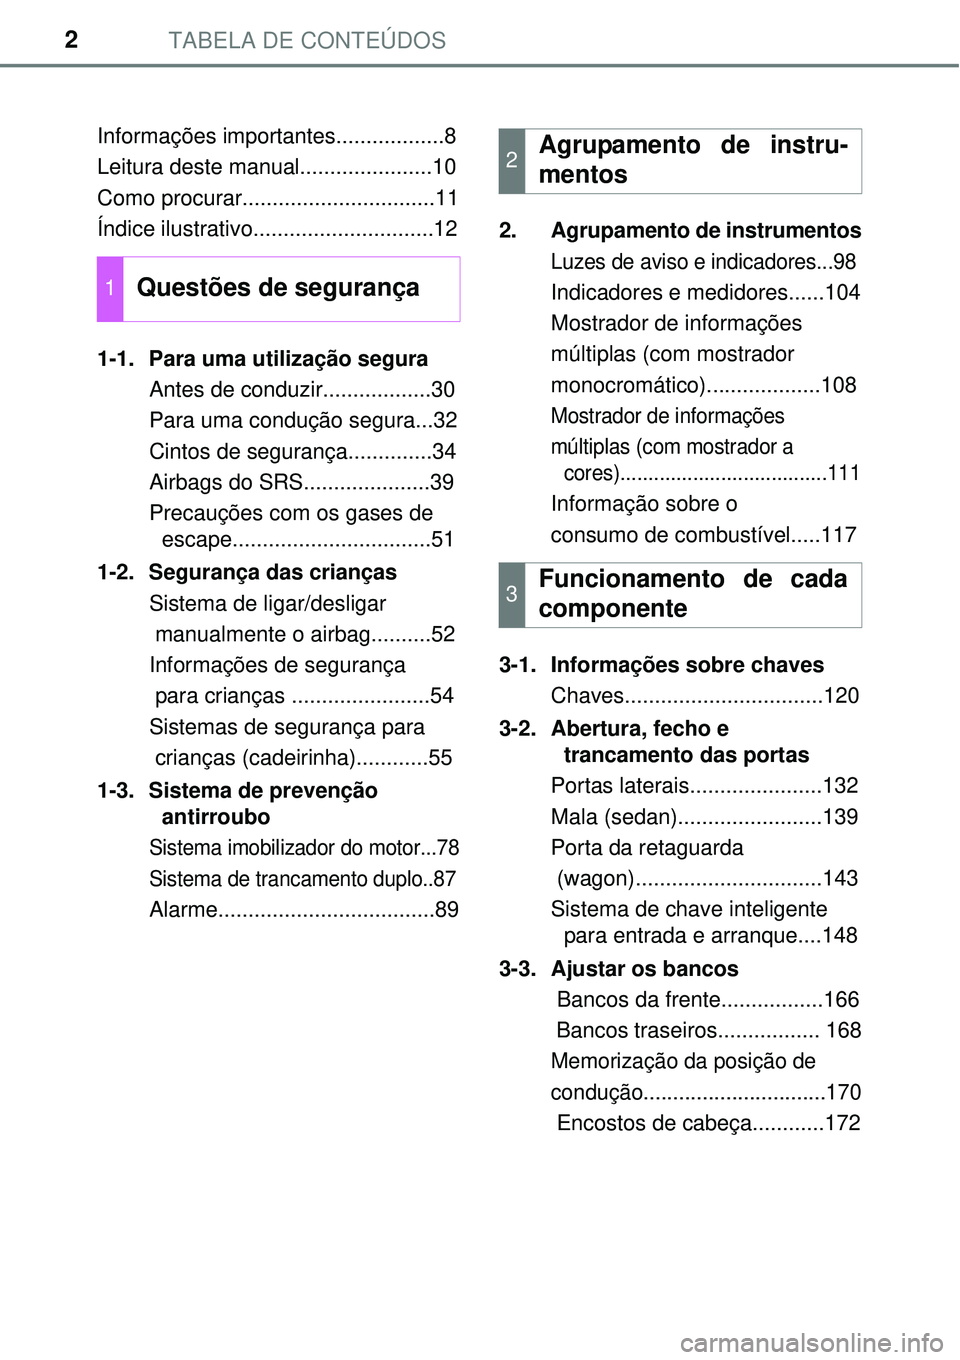 TOYOTA AVENSIS 2015  Manual de utilização (in Portuguese) TABELA DE CONTEÚDOS2
Informações importantes..................8
Leitura deste manual......................10
Como procurar................................11
Índice ilustrativo.....................